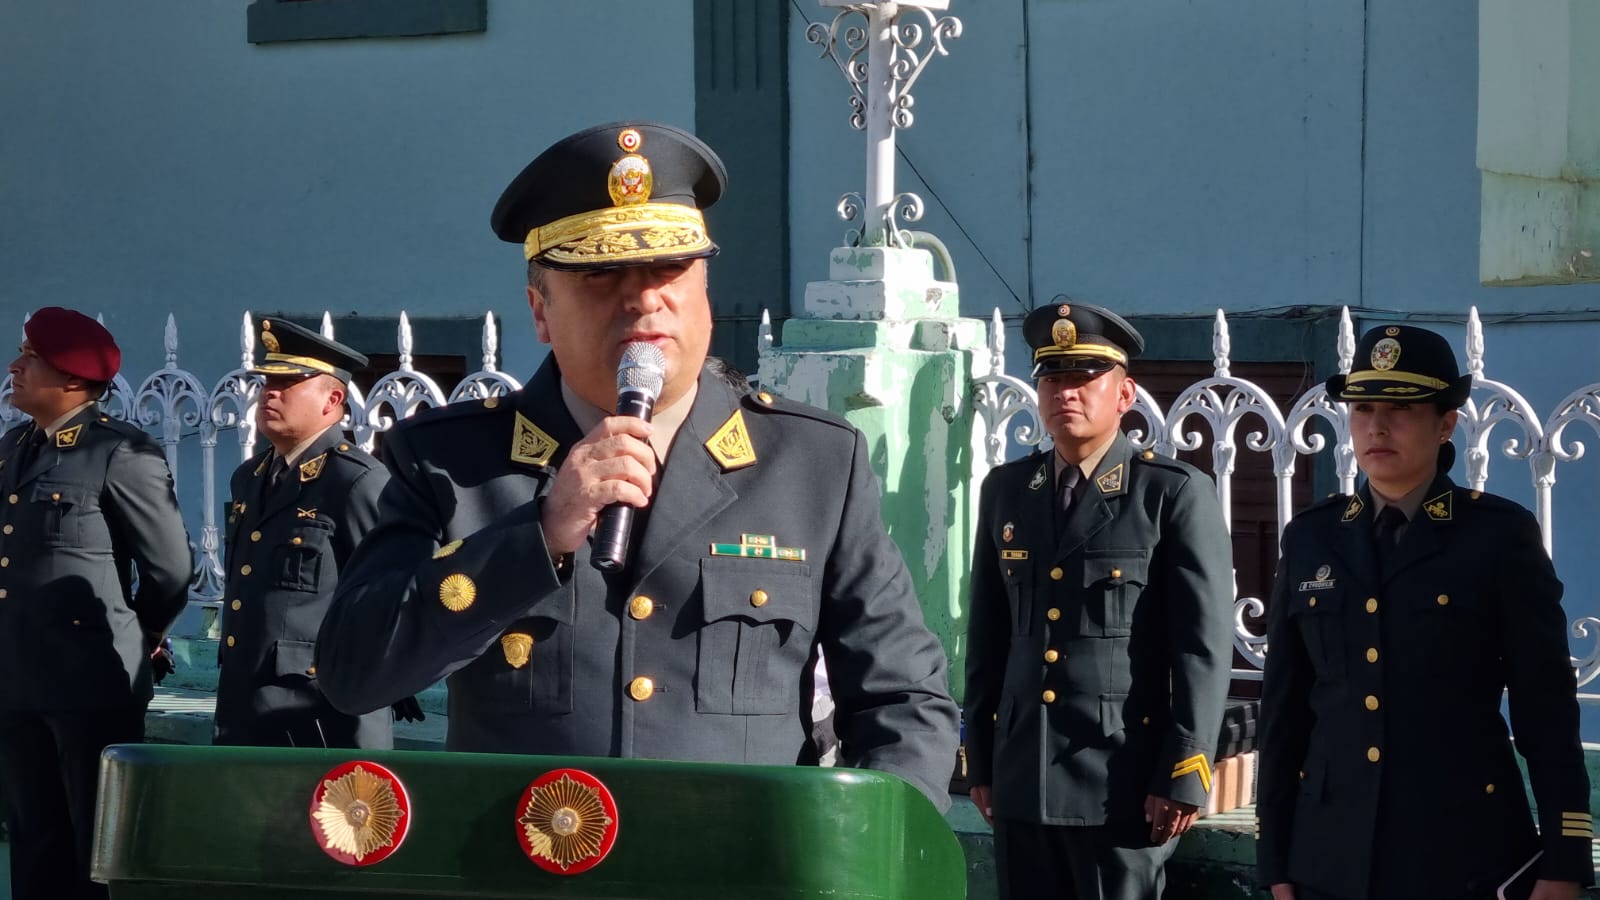 En ceremonia protocolar fue presentado el nuevo jefe del Frente Policial de Cajamarca.